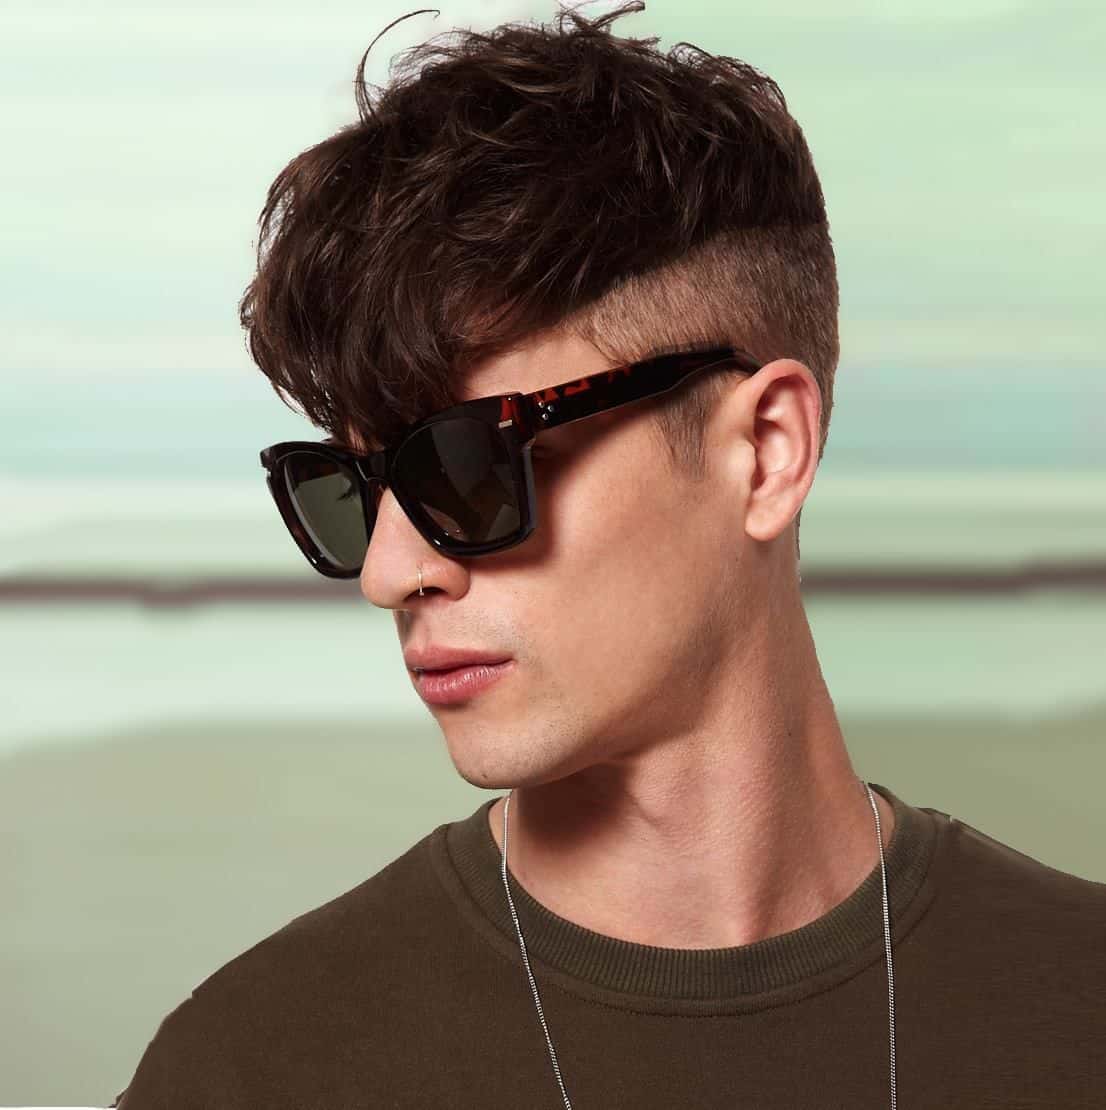 Mens Sunglasses 2019 Sunglasses For Men 2019 Glasses Frames For Men 2019 Wayfarer Sunglasses Mens Sunglasses 2019 Sunglasses For Men 2019 Glasses Frames For Men 2019  